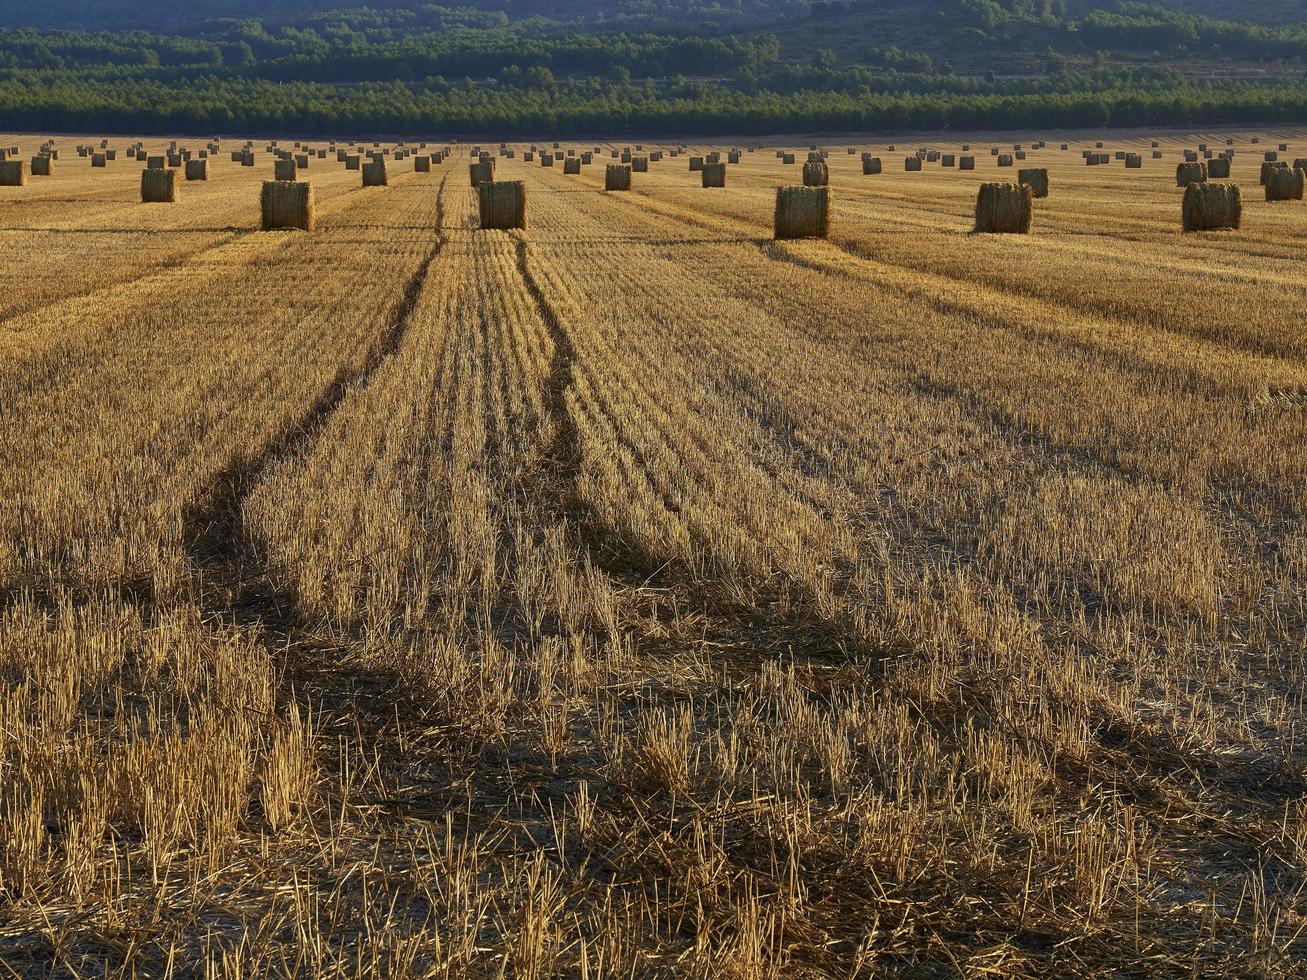 Fardos de paja en un campo de cereales temprano en la mañana, Almansa, España foto